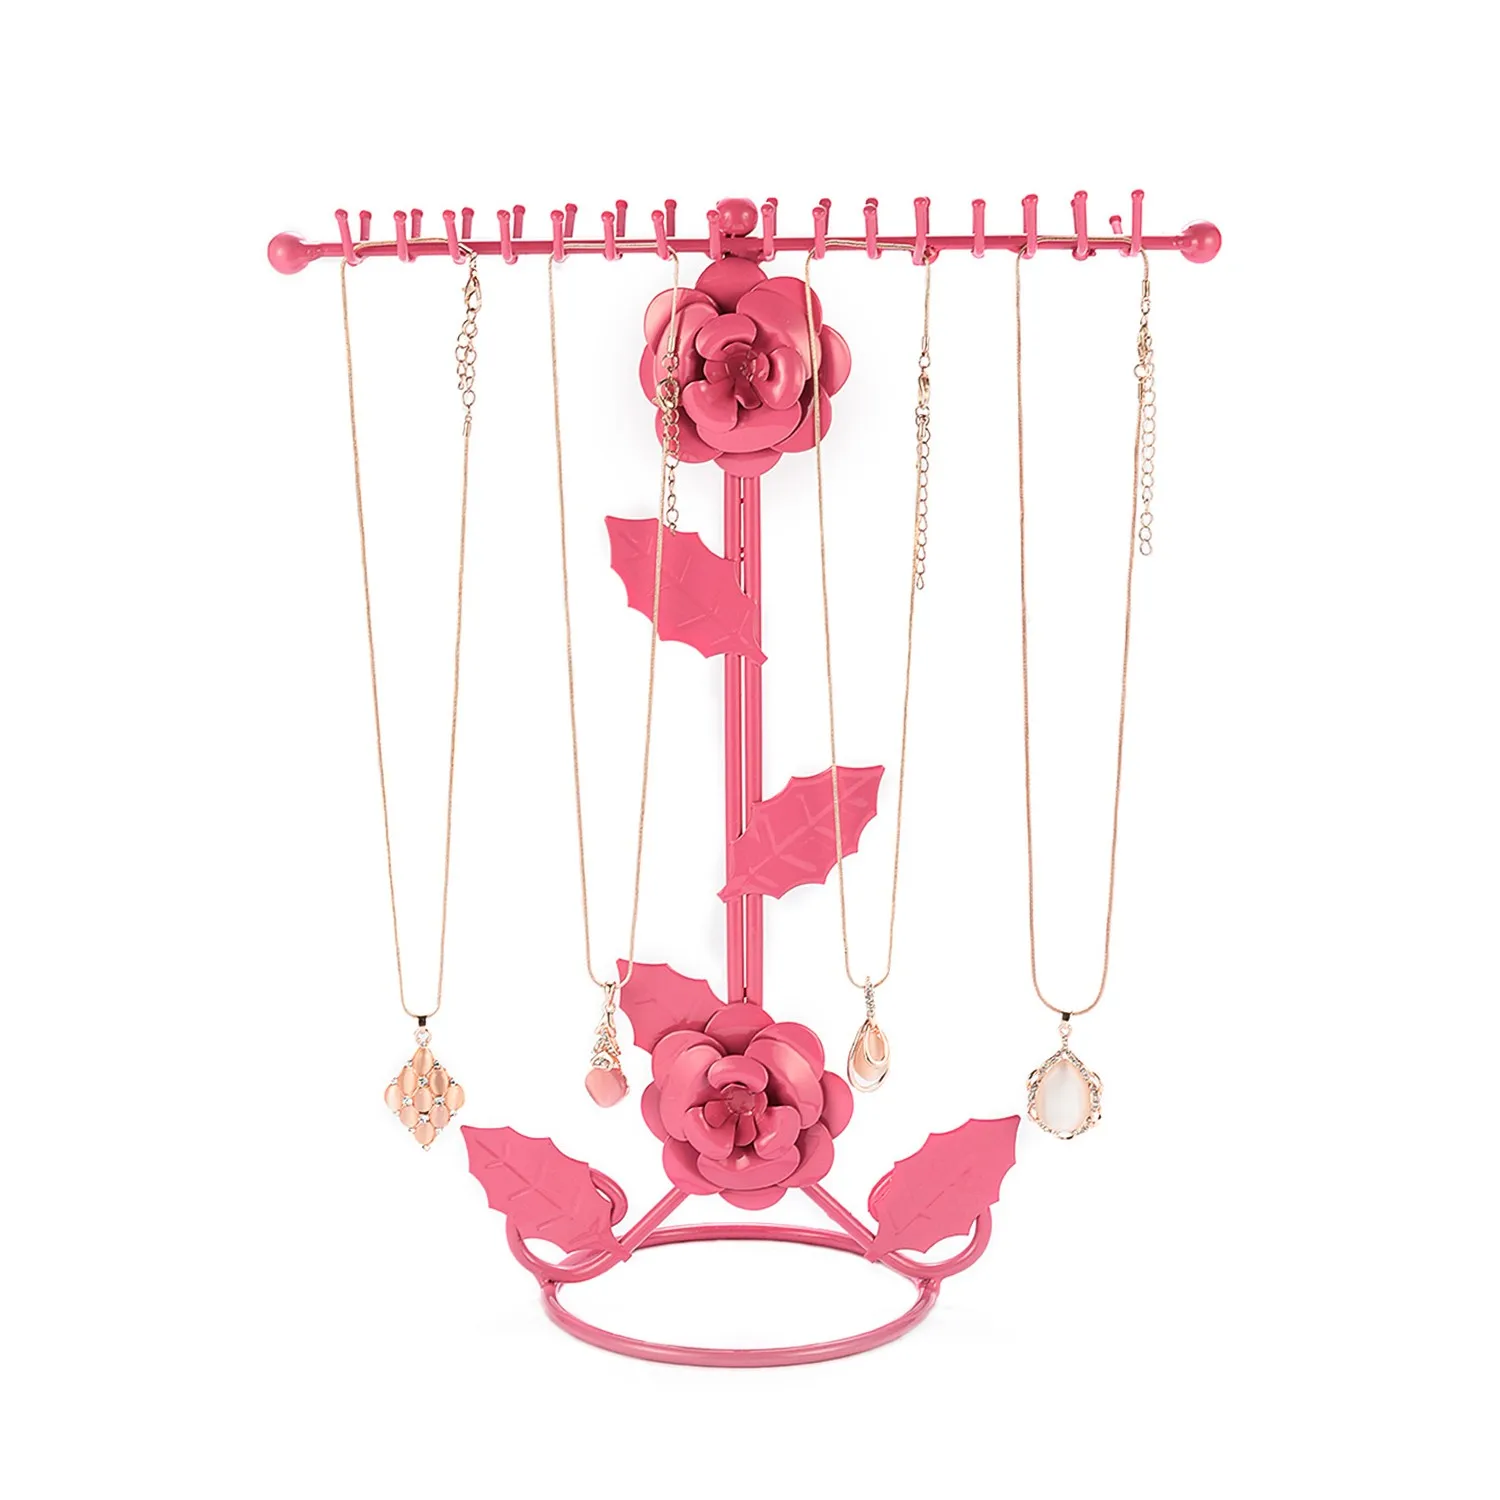 50^ цветок зонтик хранения ювелирных изделий серьги ожерелье стеллаж для хранения дисплей стенд продукт